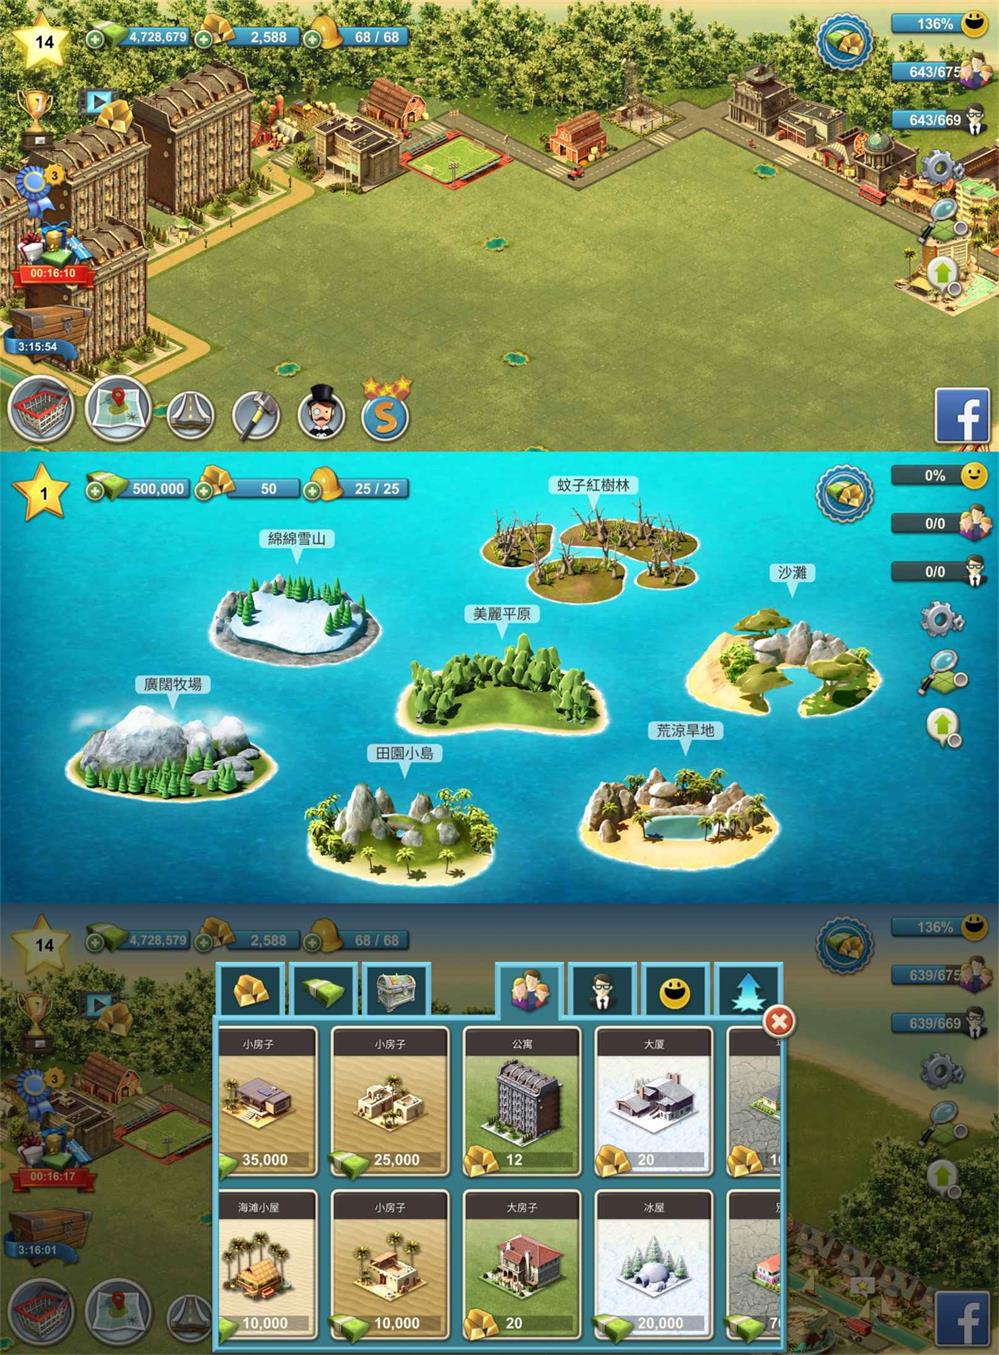 模拟建造经营游戏 城市岛屿4-小灰兔技术频道